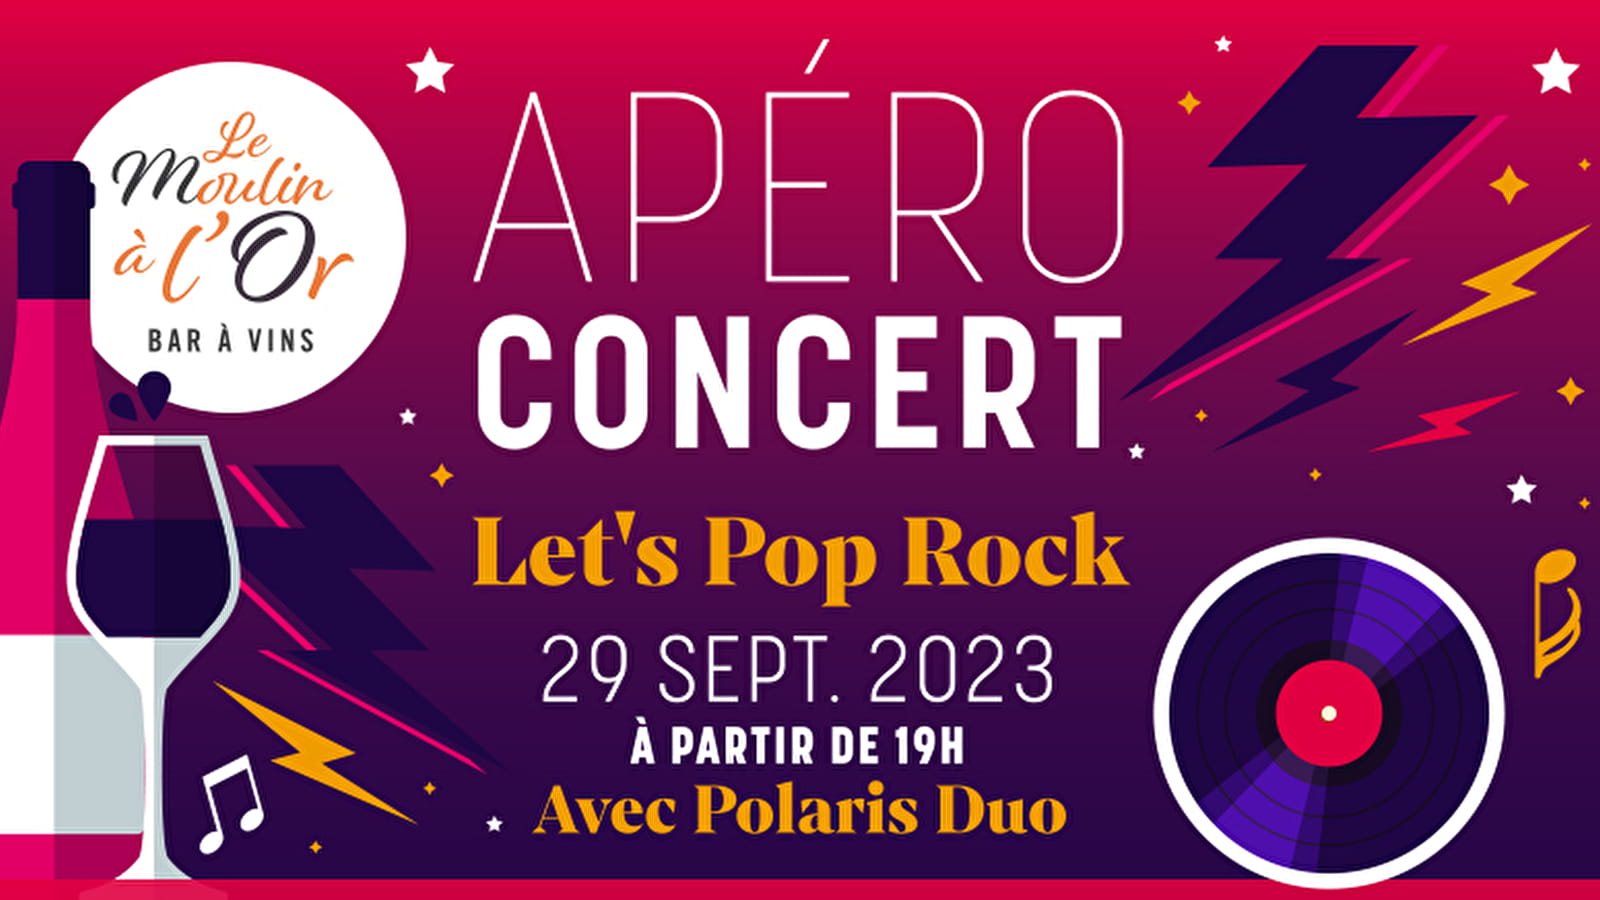 Aperitif concert: Let's Pop Rock